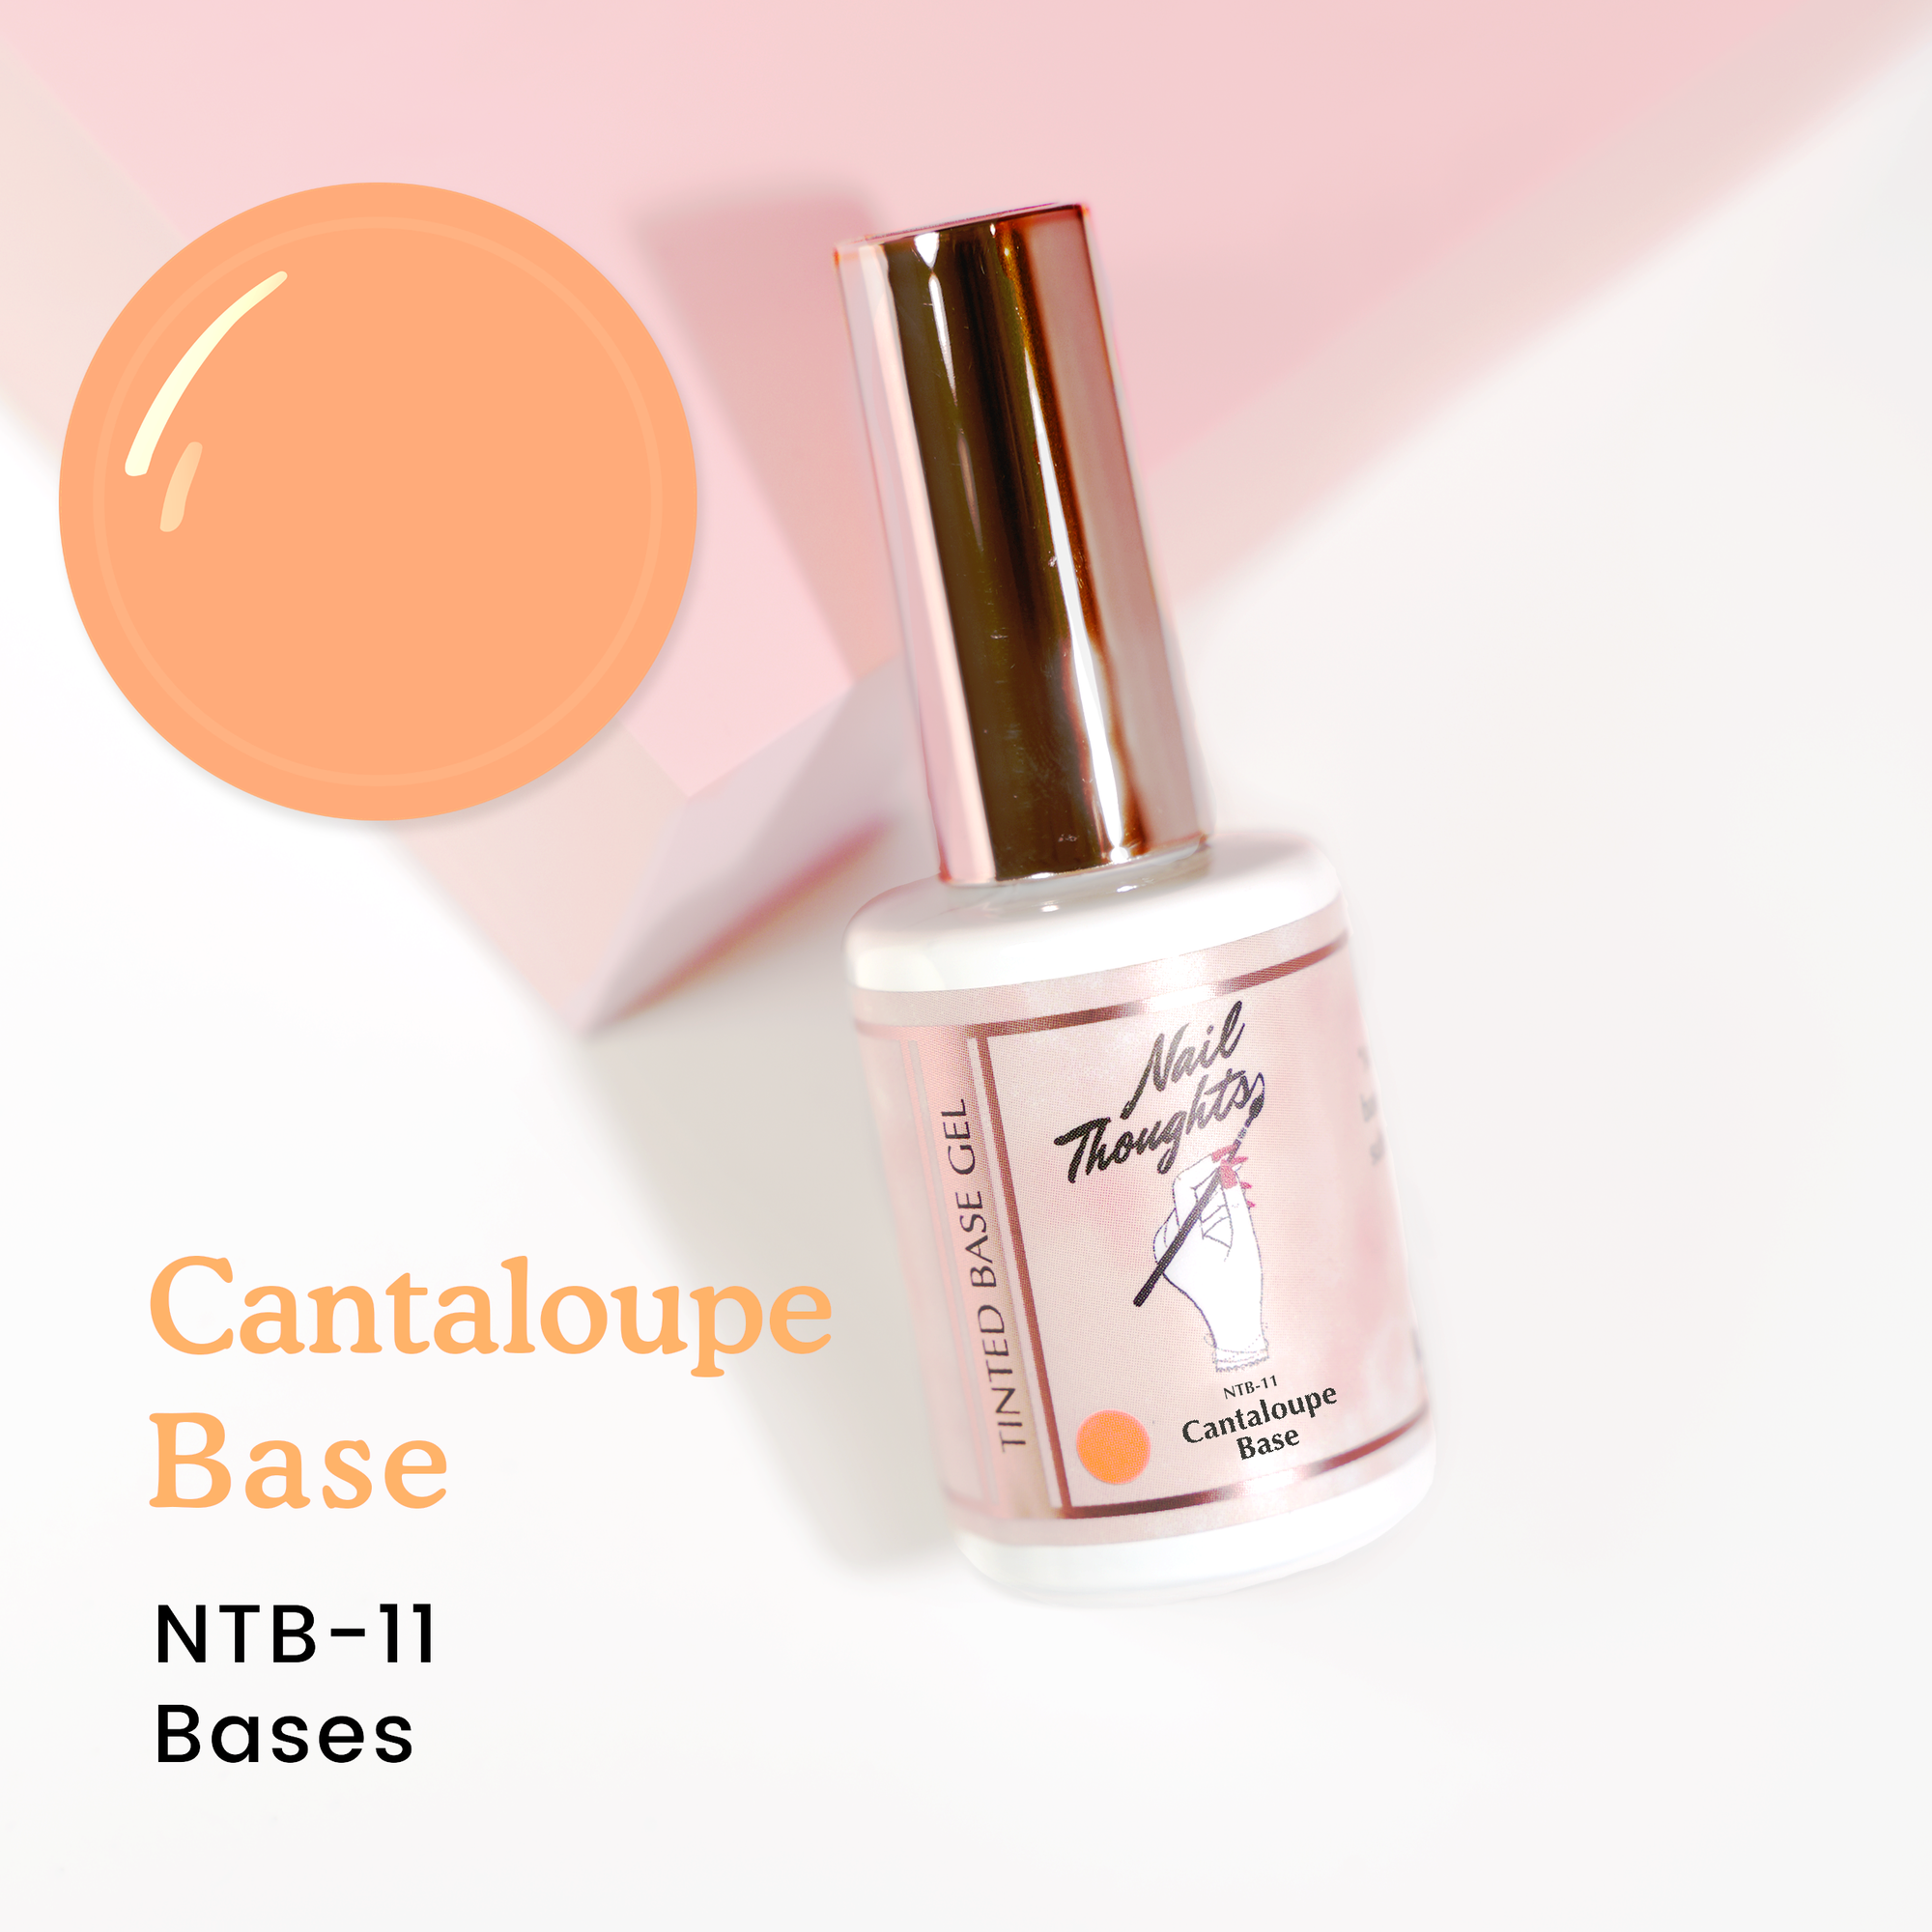 Cantaloupe Base NTB-11